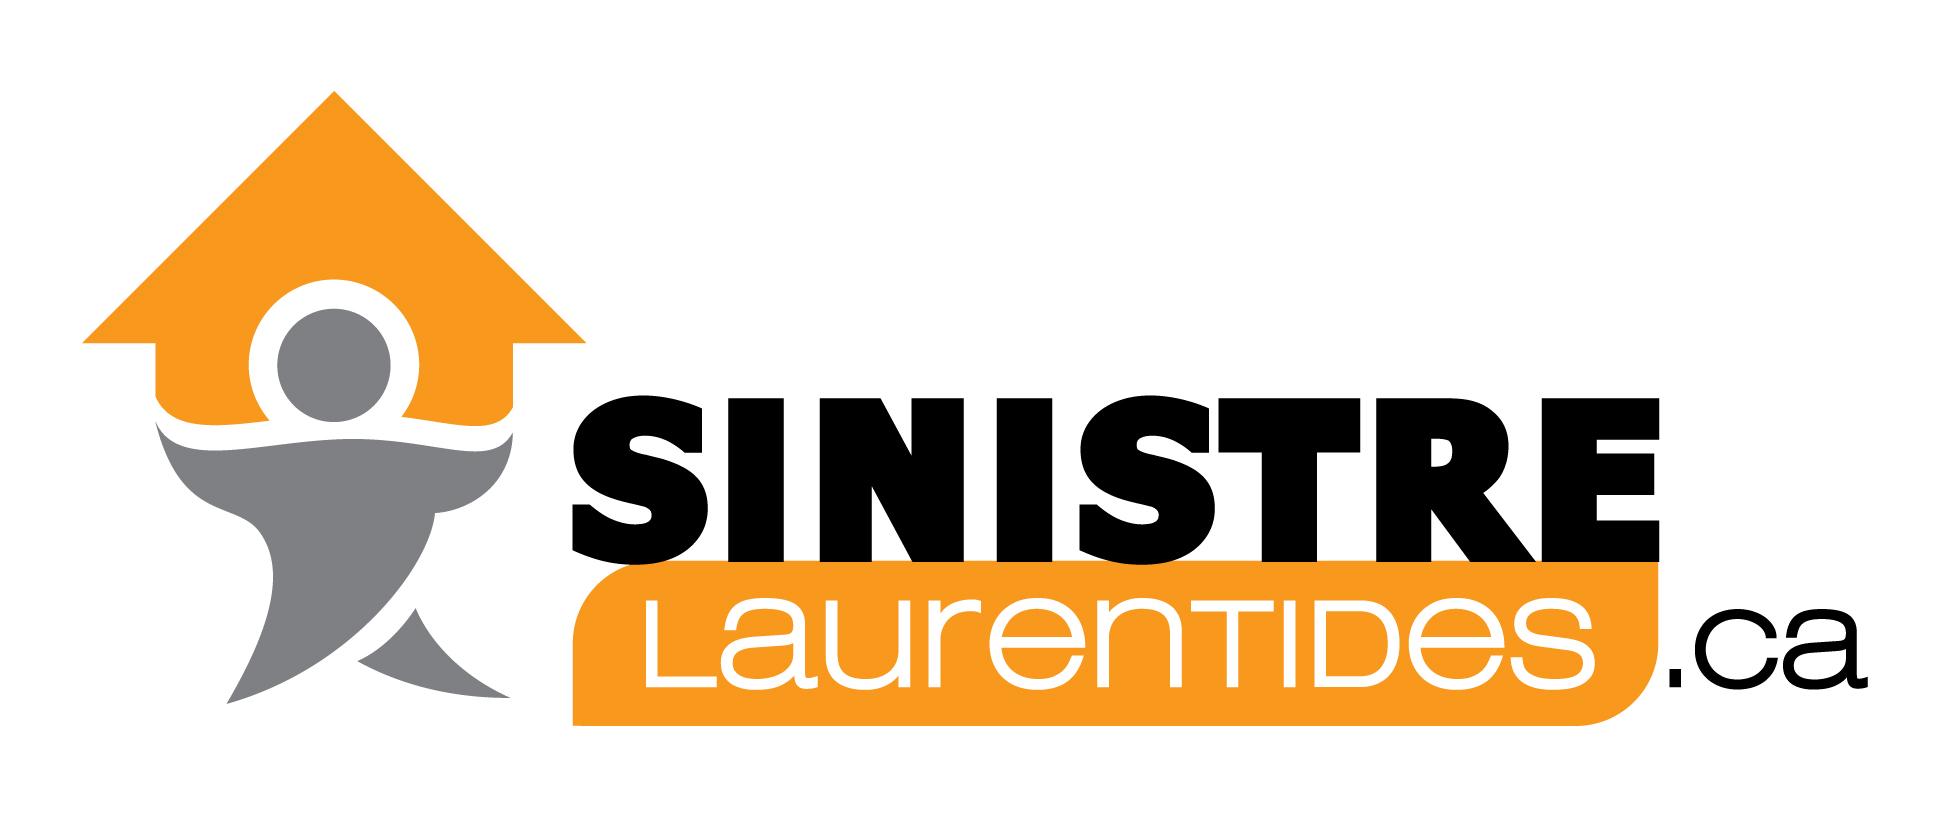 Sinistre Laurentides